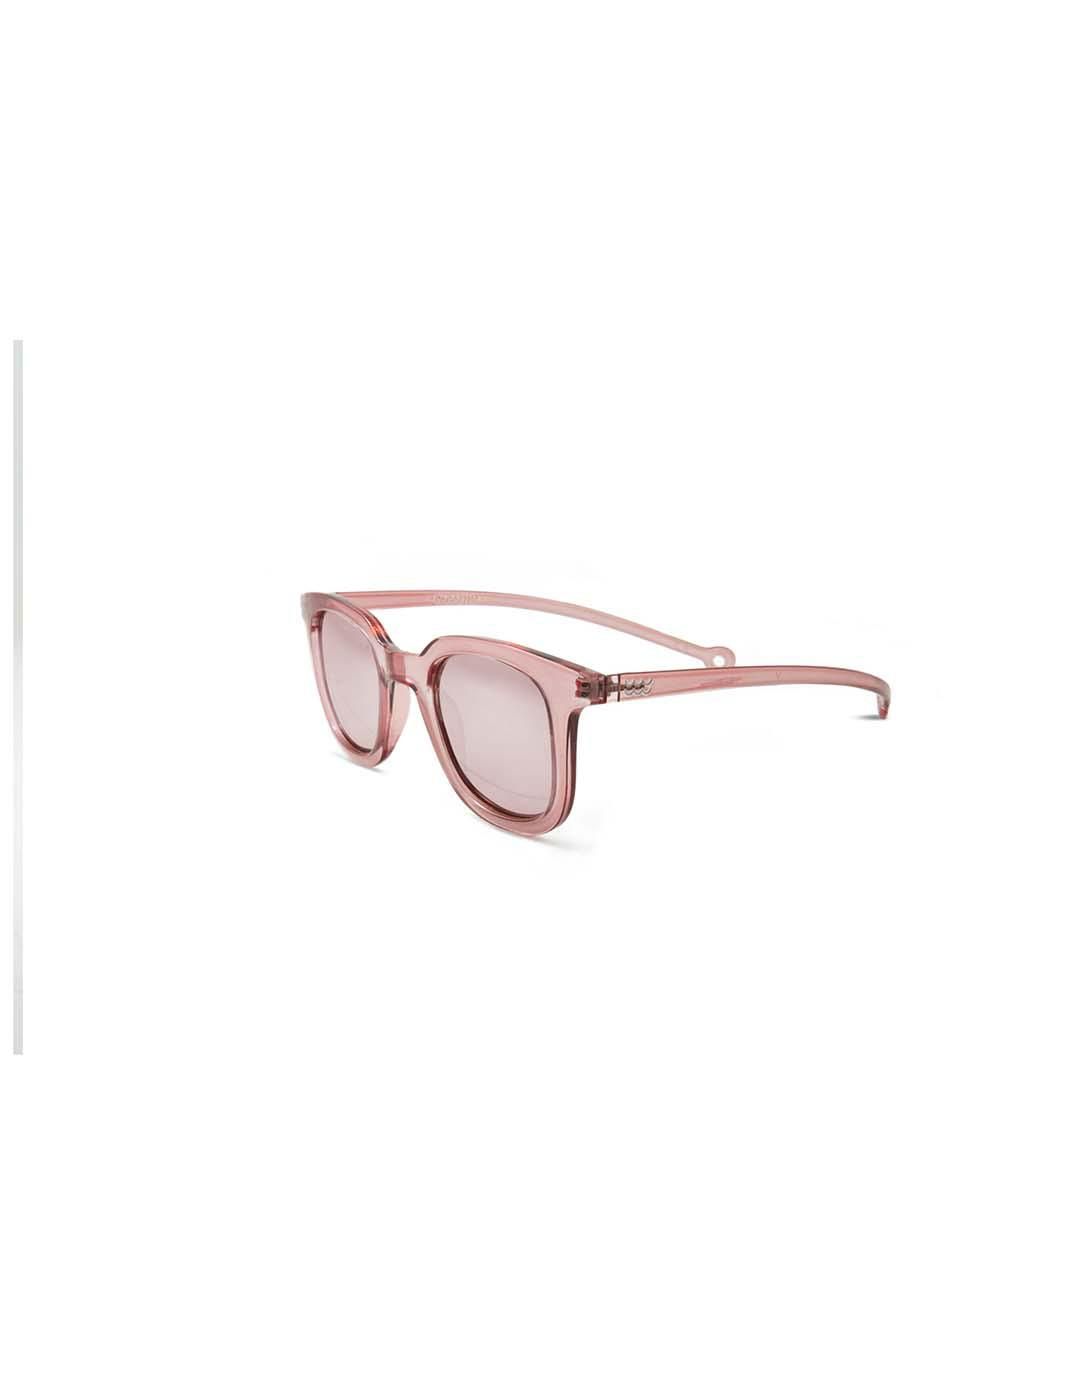 Gafas PARAFINA Cauce Hillier Pink Pantera Pink - Bicos de Fío